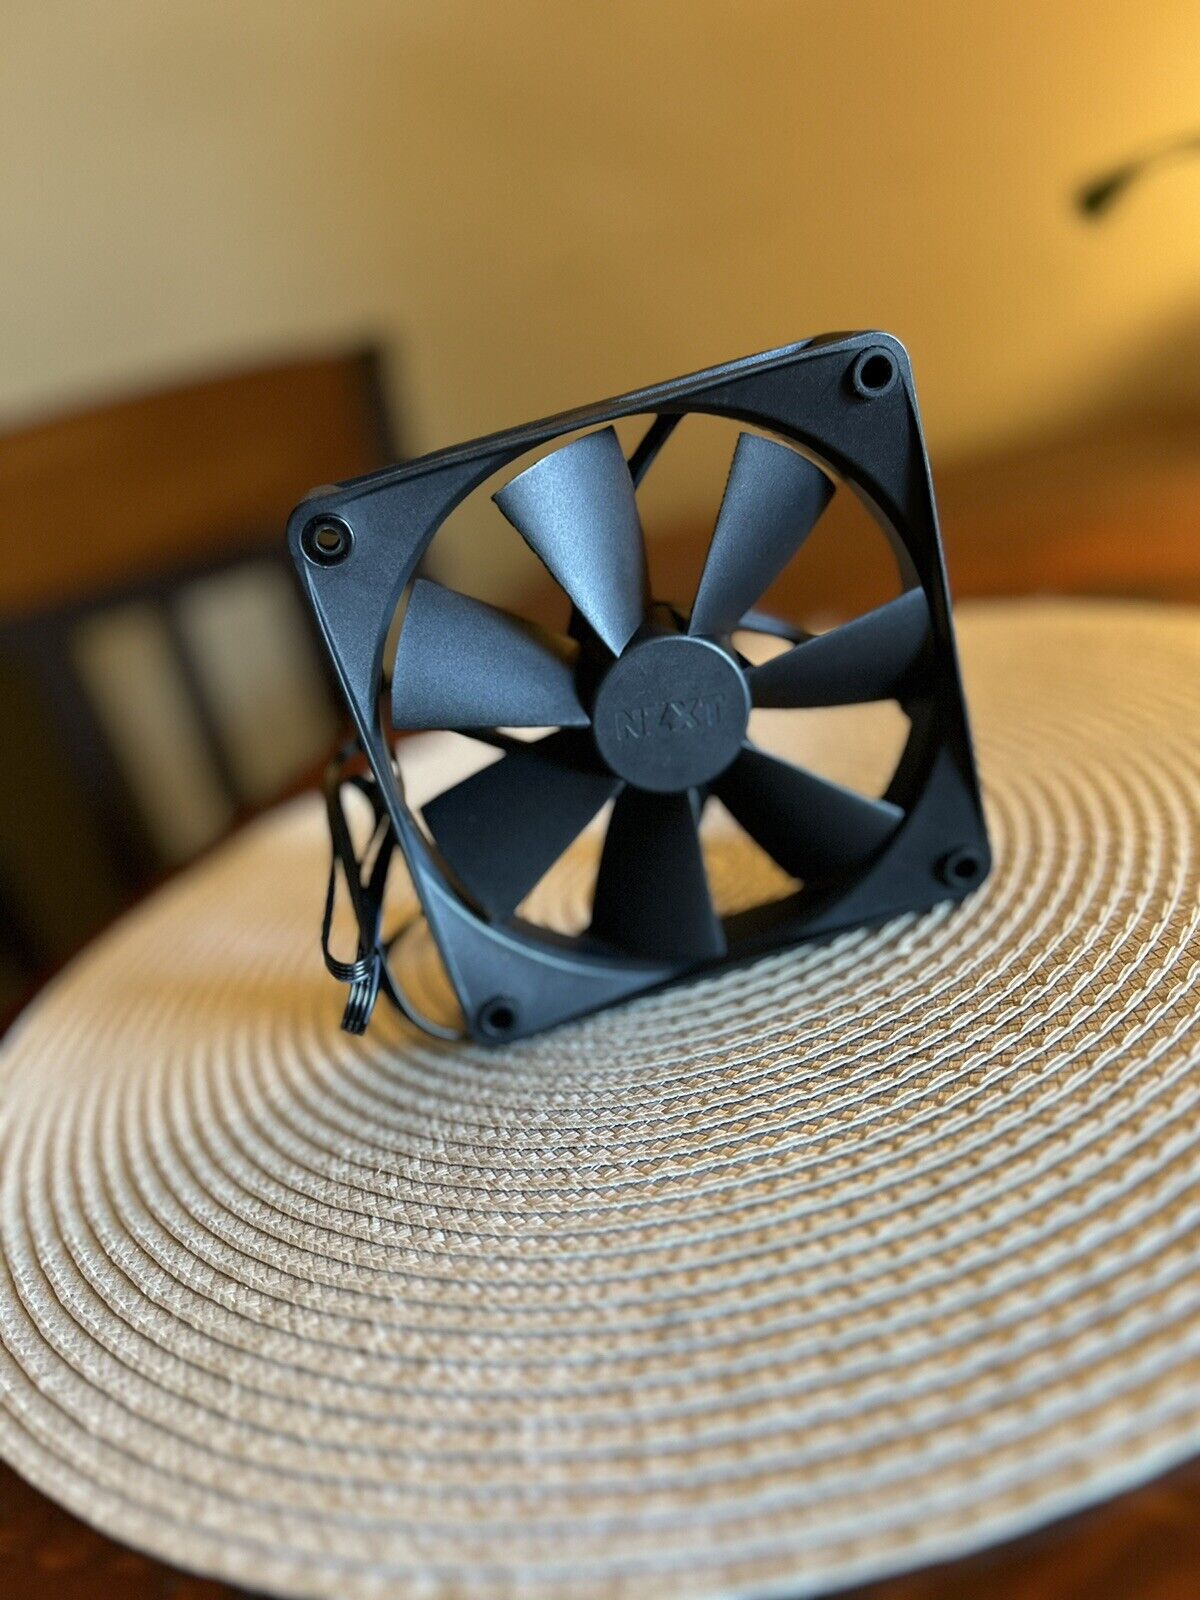 NZXT 120mm Fan